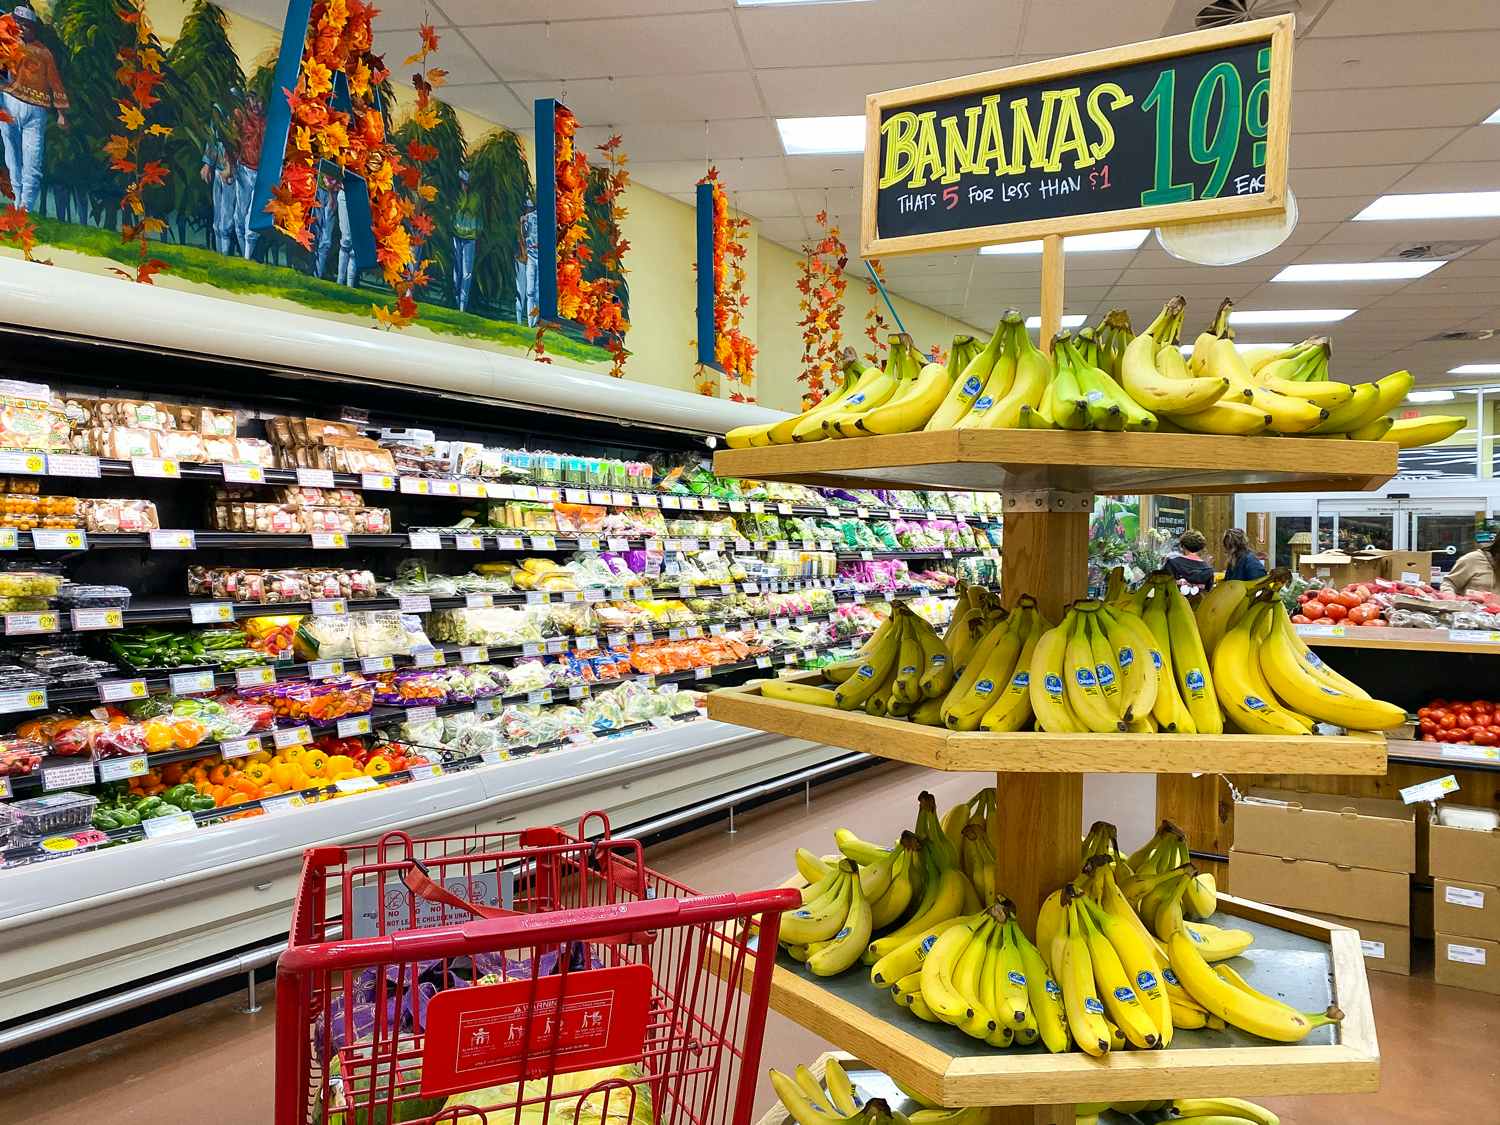 trader joes cart near banana display